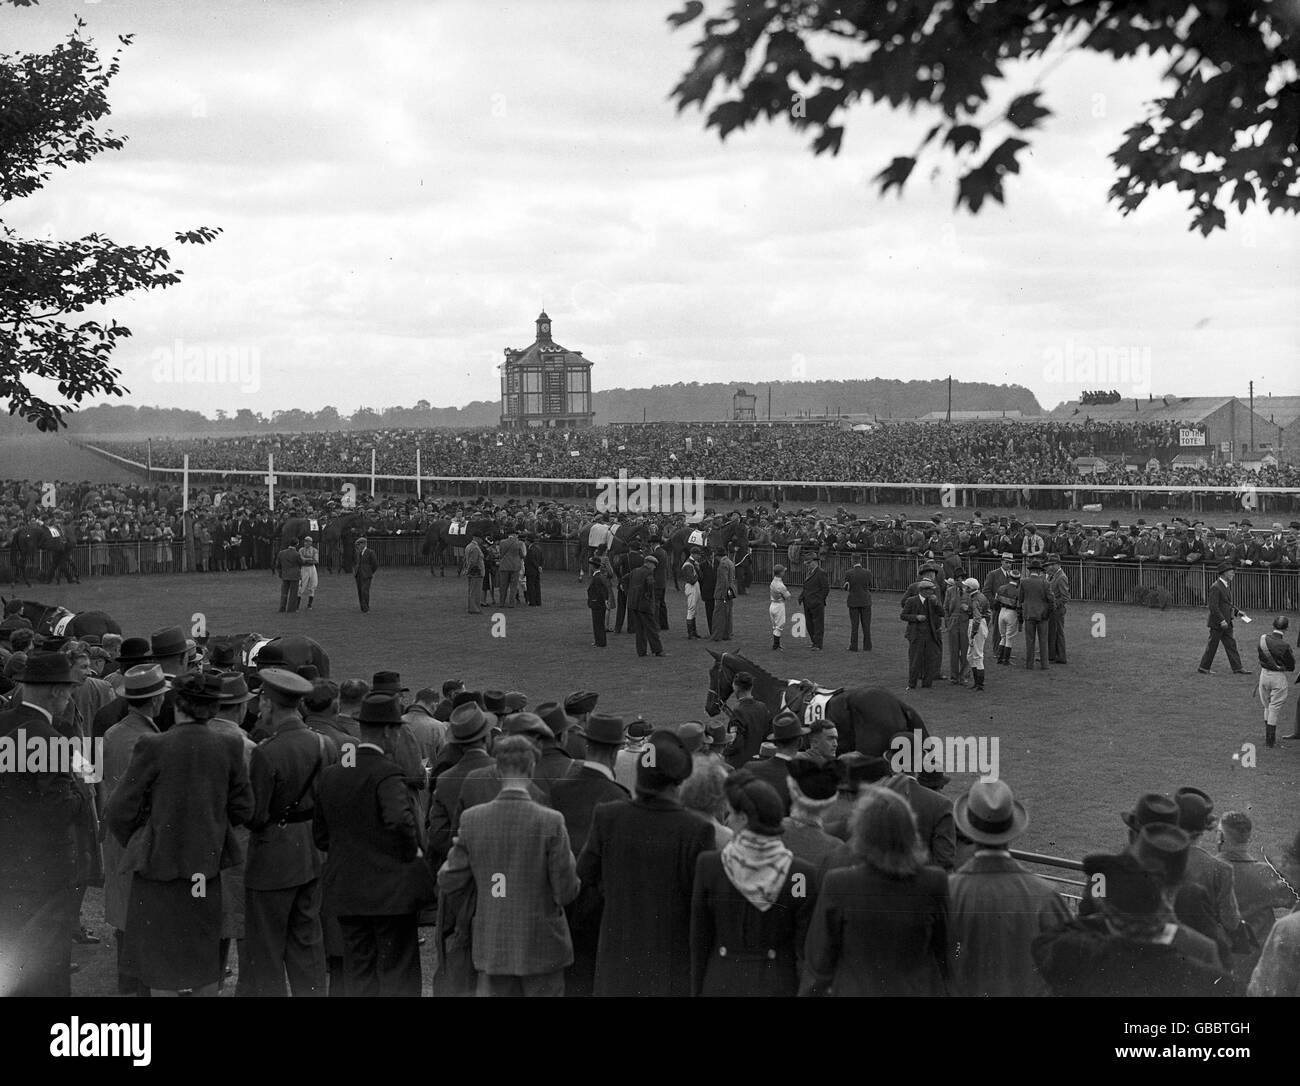 Pferderennen - St Leger - York - 1945. Die Parade findet vor dem Rous-Gewinnspiel während des St. Leger auf der Pferderennbahn in York statt. Stockfoto